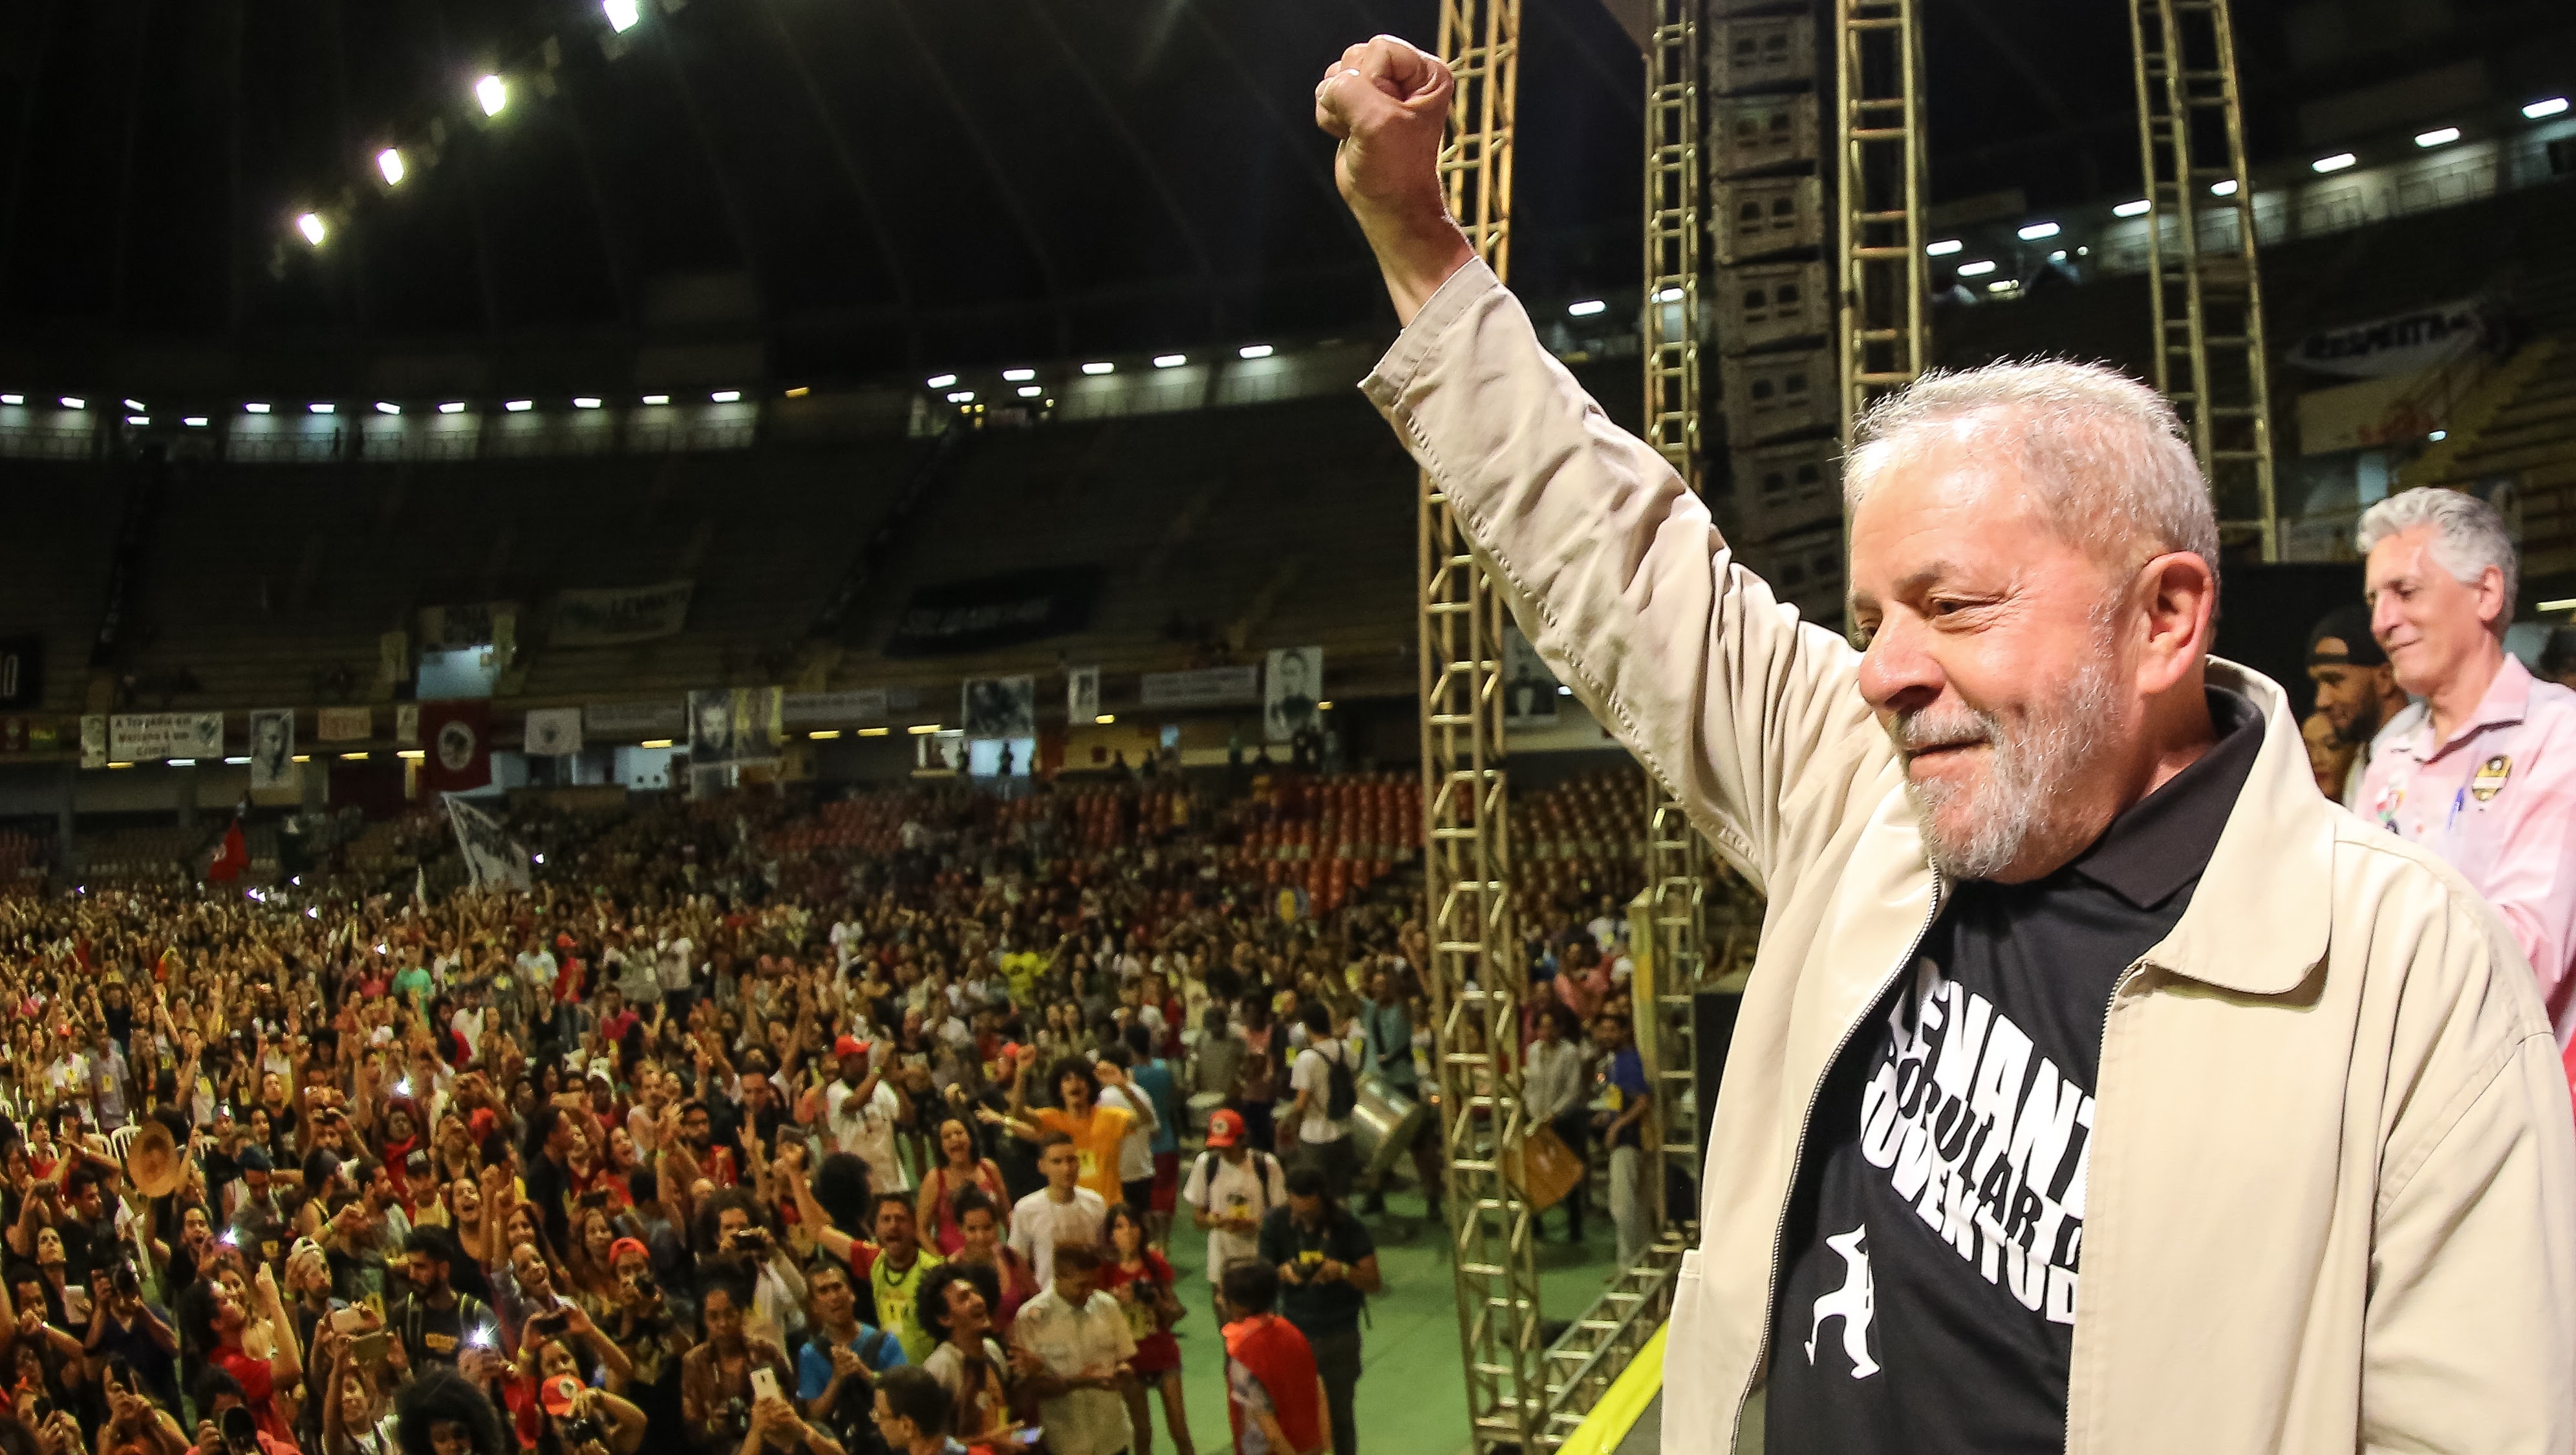 “Rejeitando a política, quem cresce é a direita raivosa”, diz Lula a jovens